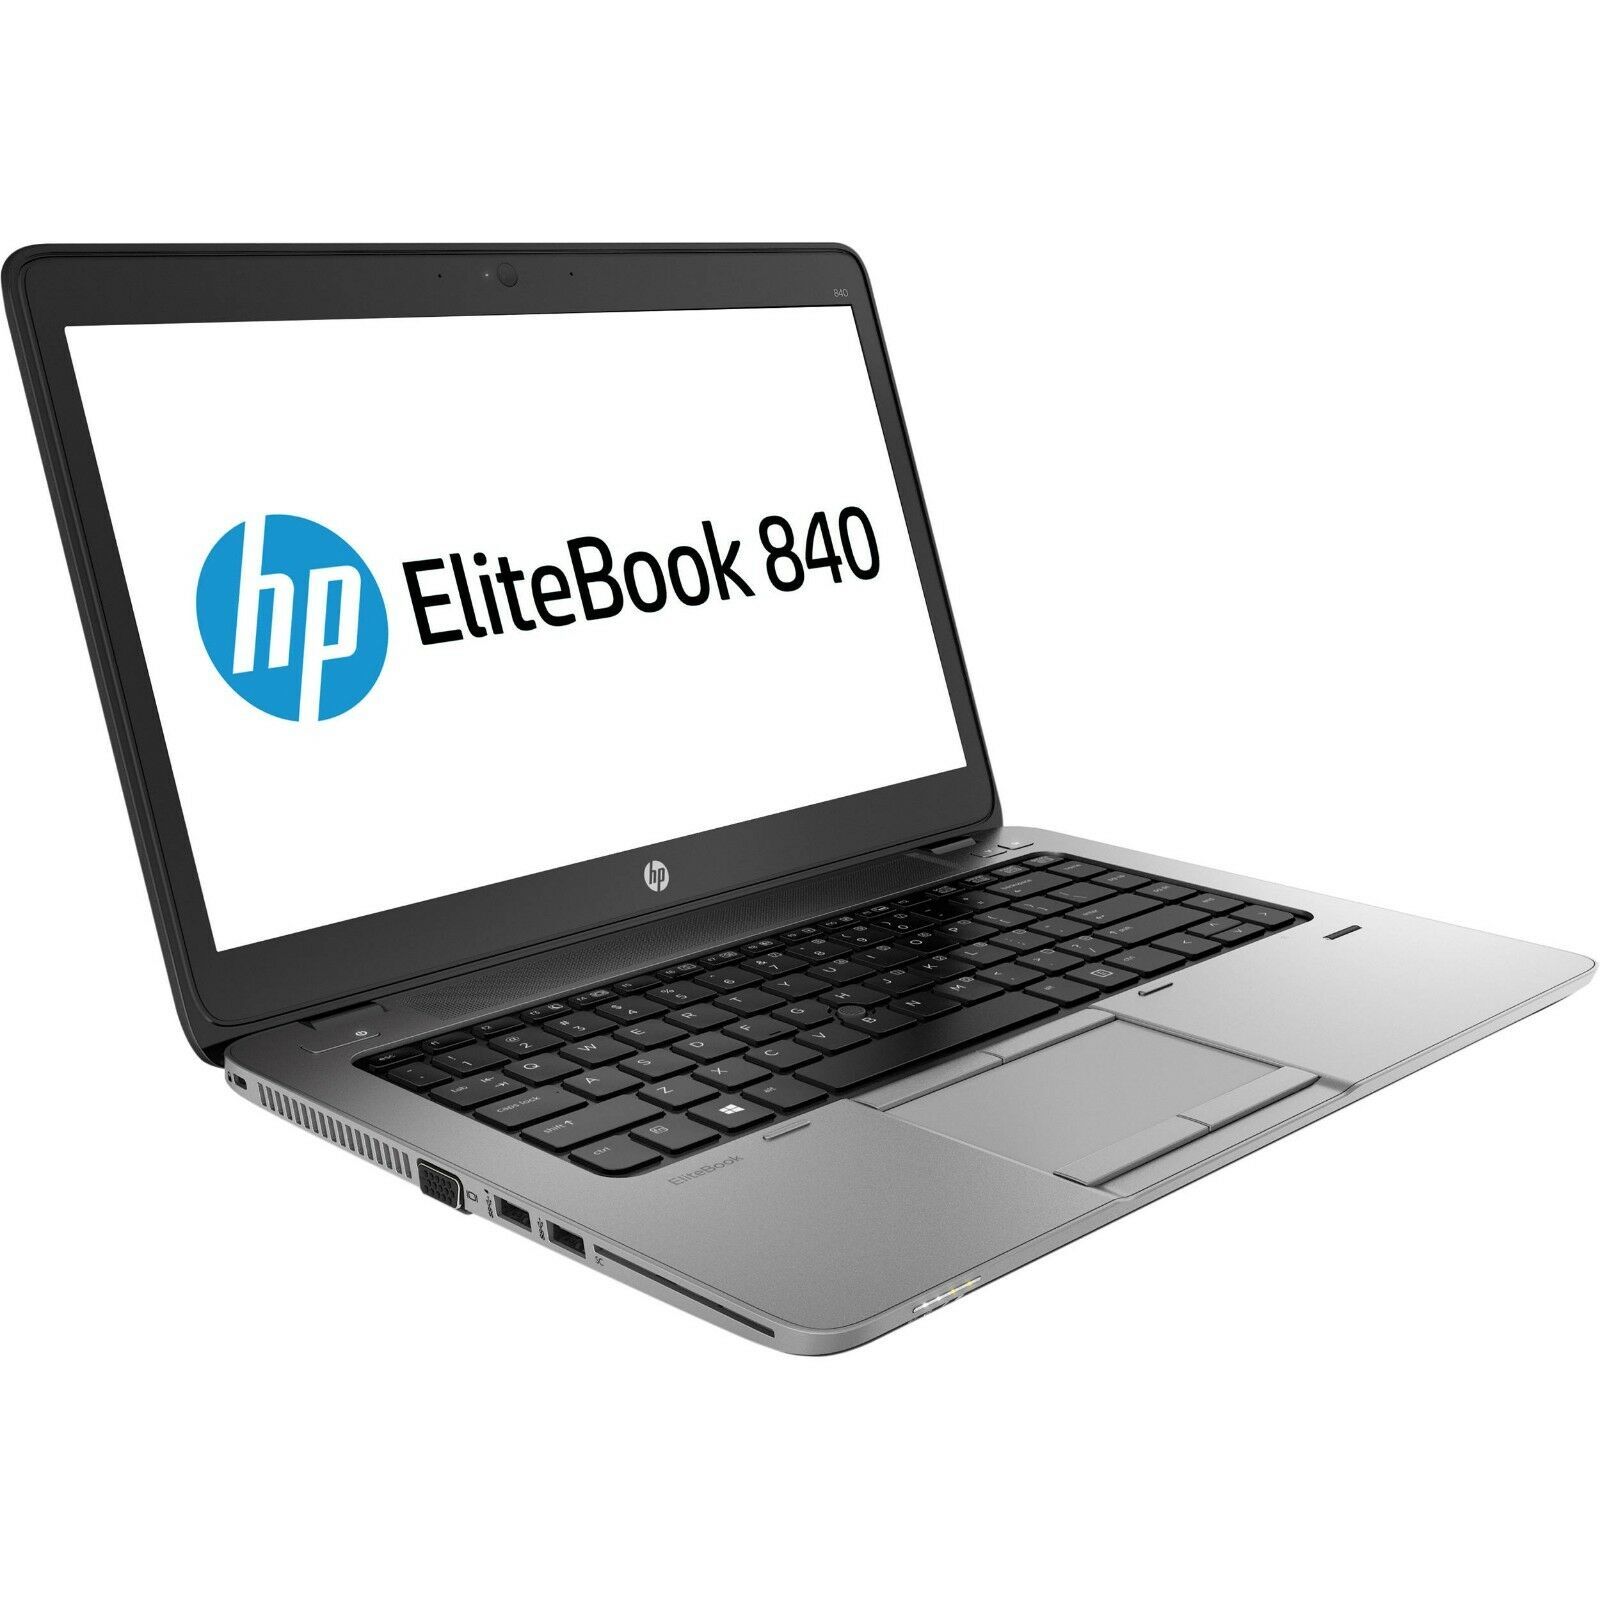 HP EliteBook 840 G2 Intel i5 5300U 2.30GHz 8GB RAM 256GB SSD 14" NO OS Full Size Image